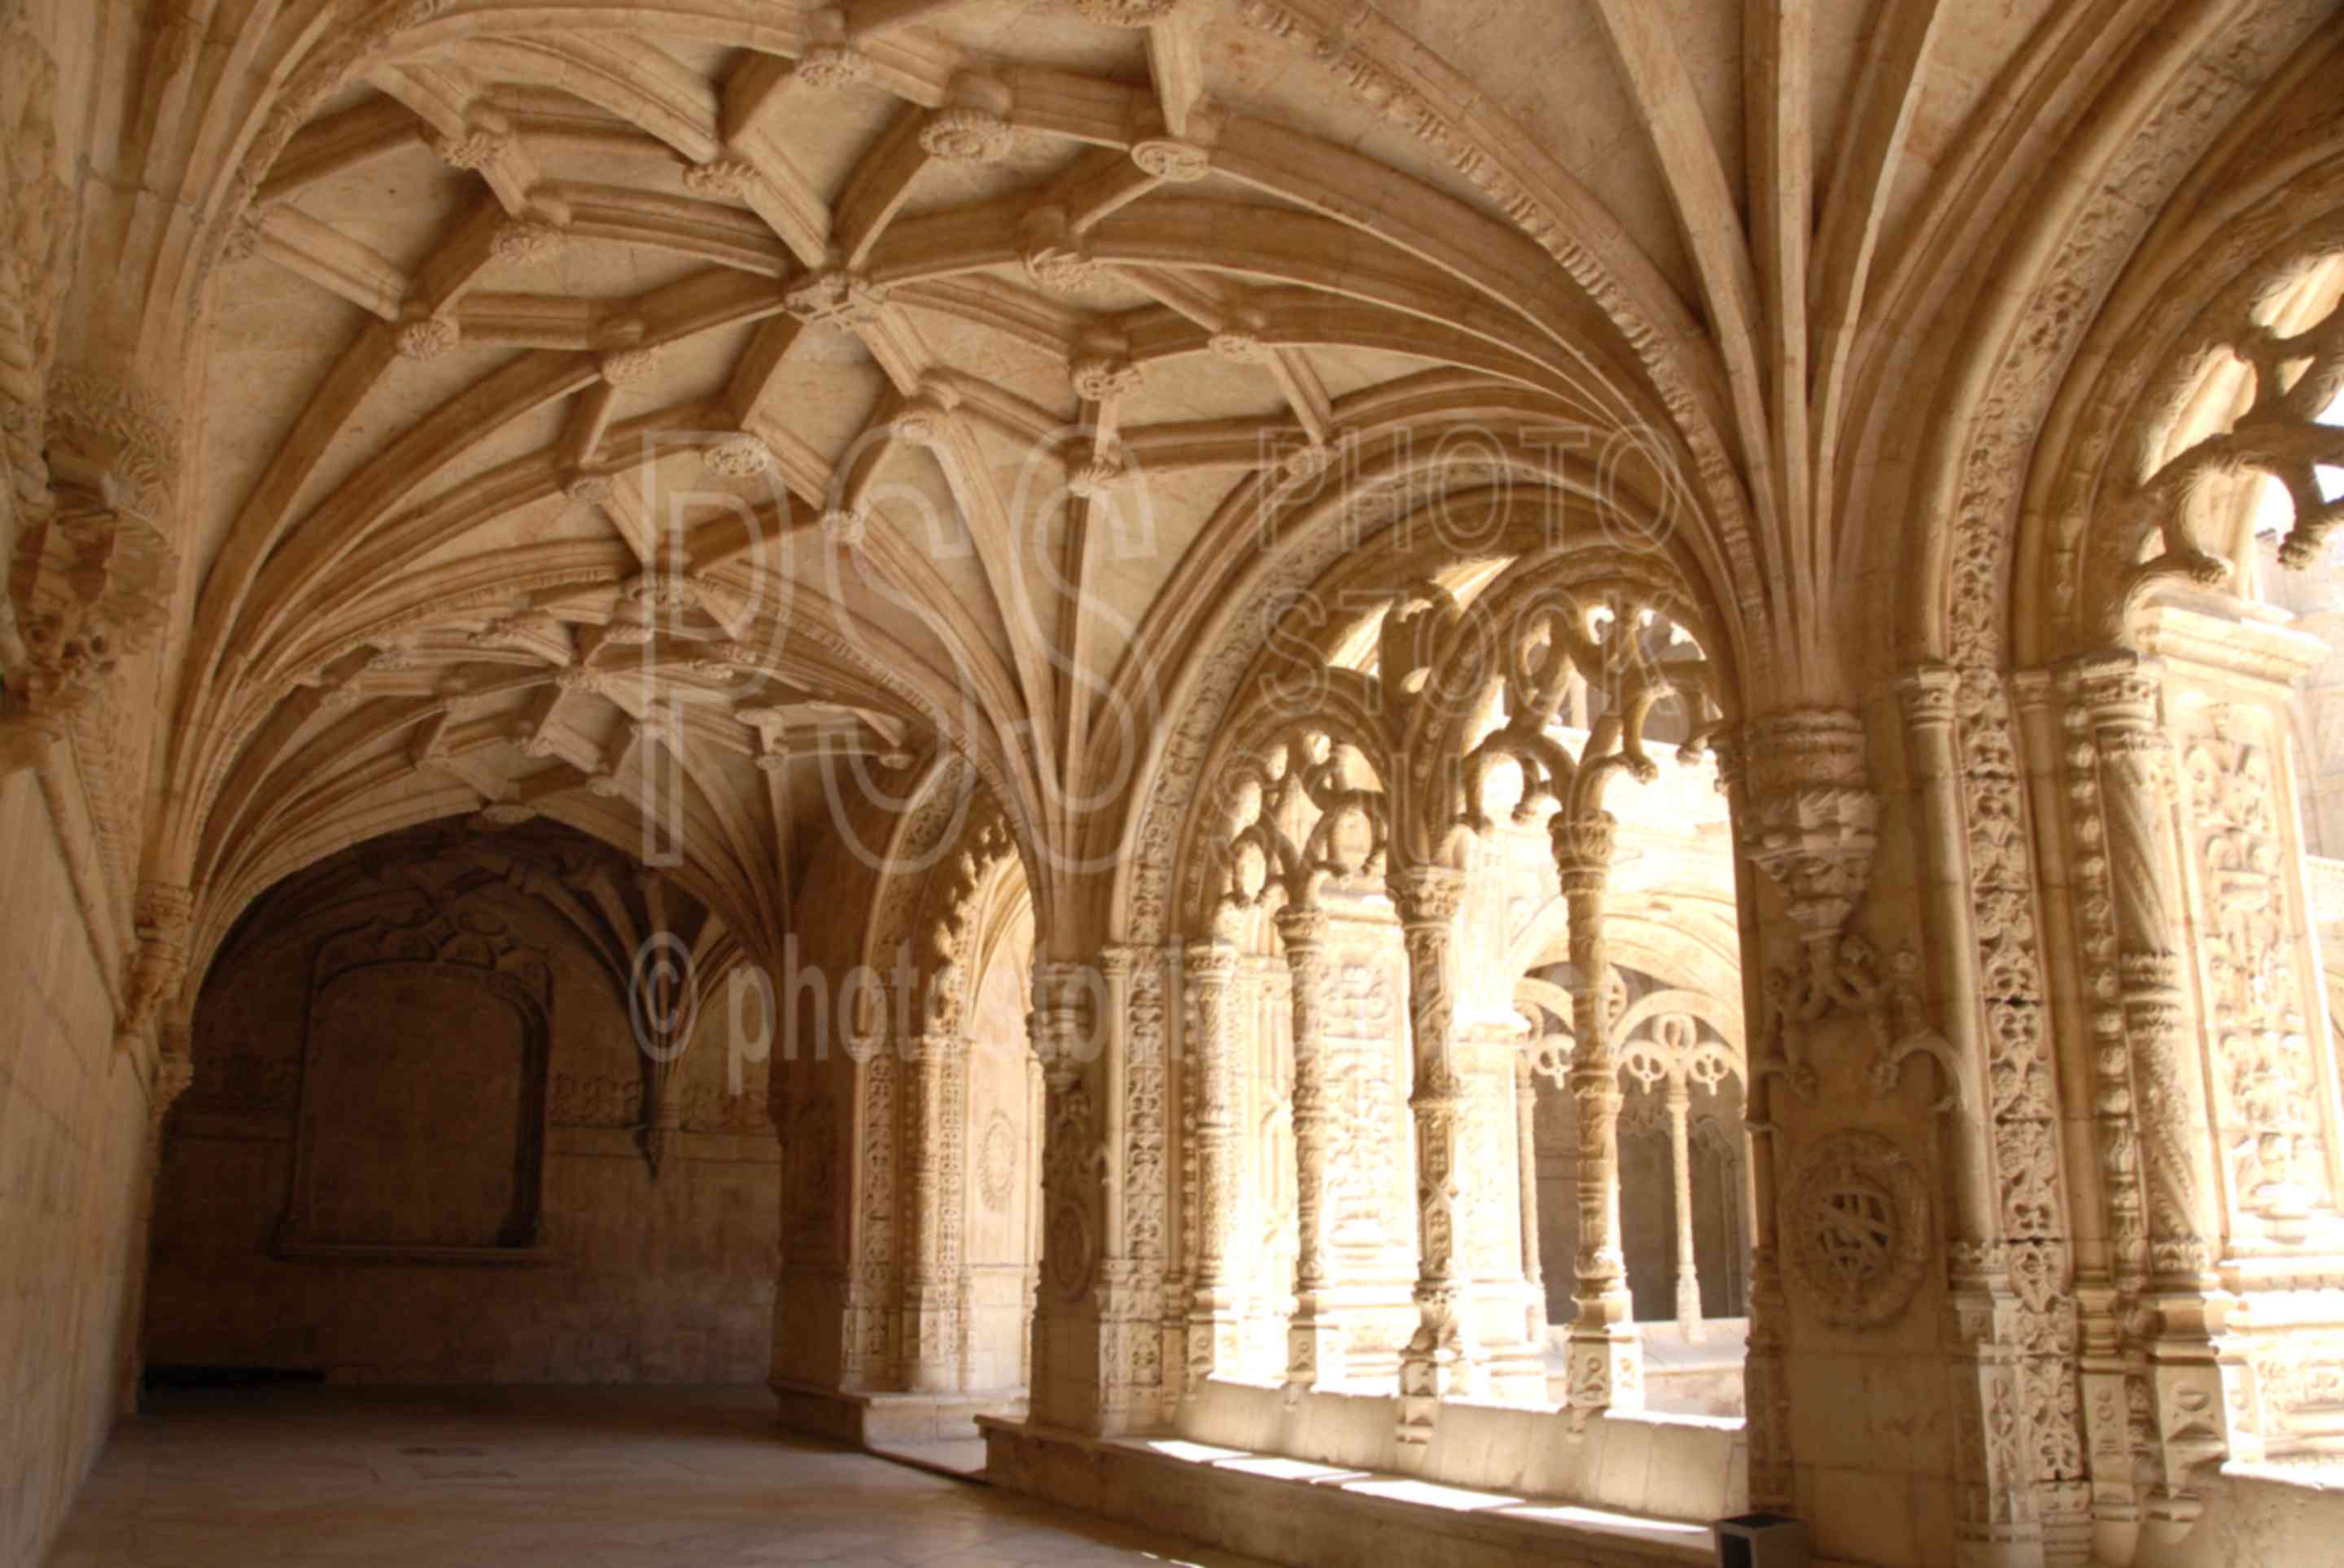 Hallway Arches,mosteiro dos jeronimos,architecture,manueline,king manuel,jeronimos monastery,churches,religion